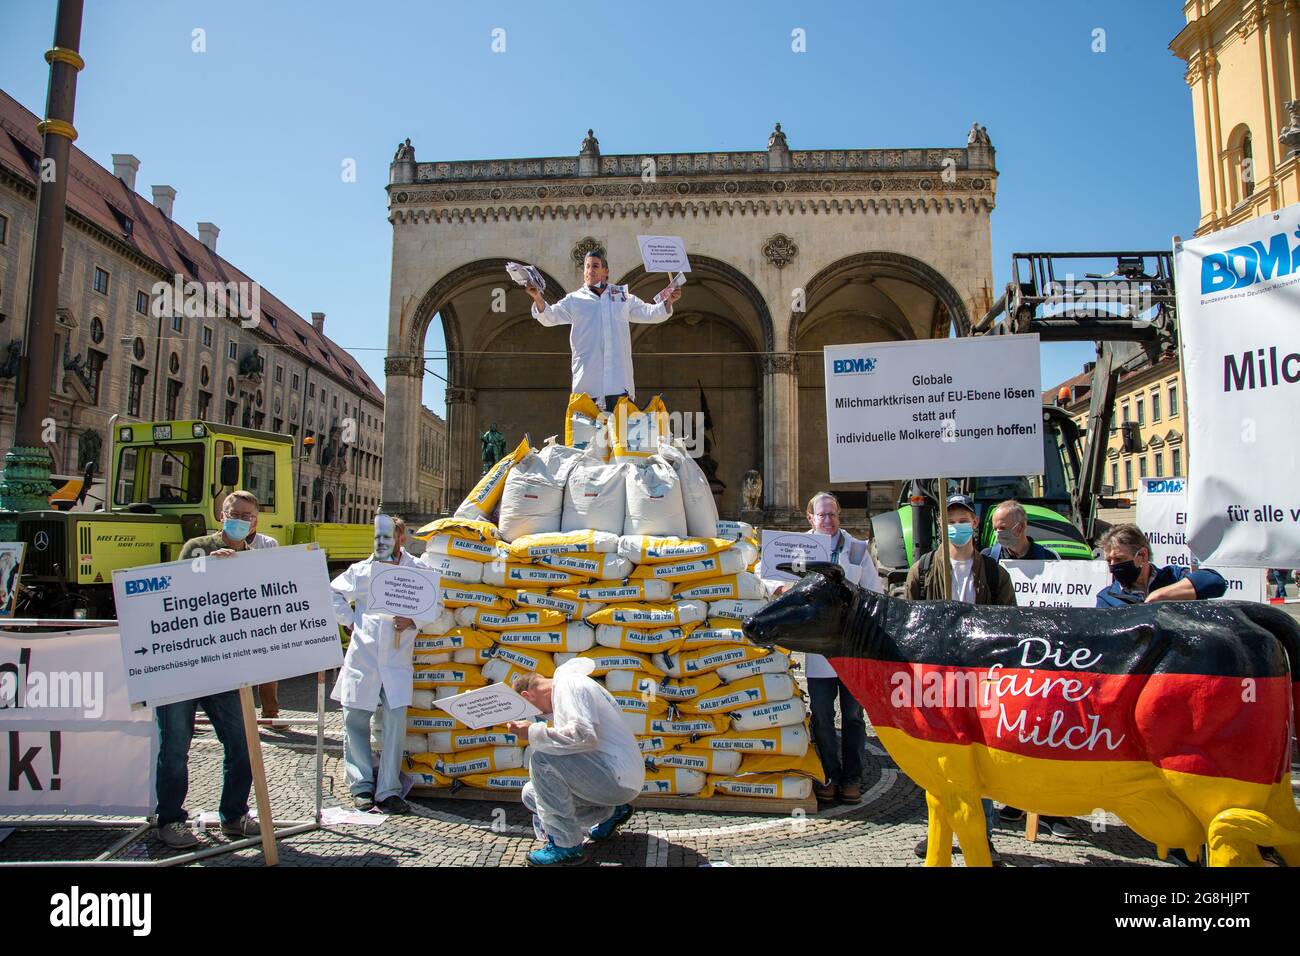 Demonstrant voller Geld, der die macht der Milch Konzerne symboliziert mit einem sarkastischen Schild: ' Billie Milch abholen & mit staatlichen Zuschuss einlagern. für uns vince! ' und wirft mit Geld um sich. Er steht auf 300 Säcke mit Milchpulver und Demonstranten mit Schilder und einer Milchkuh in Deutschlandfarben 'die faire Milch'. Am 18. Maggio 2020 haben zahlreiche Milchbauern für einen Milchpreis von mindest 40 cent demonstriert. Durch die Corona Krise ist Milchpreis Global deutlich gefallen und der BDM fordert einen staatlichen Eingriff. München, 18. Maggio 2020. (Foto di Alexander Pohl/ Foto Stock